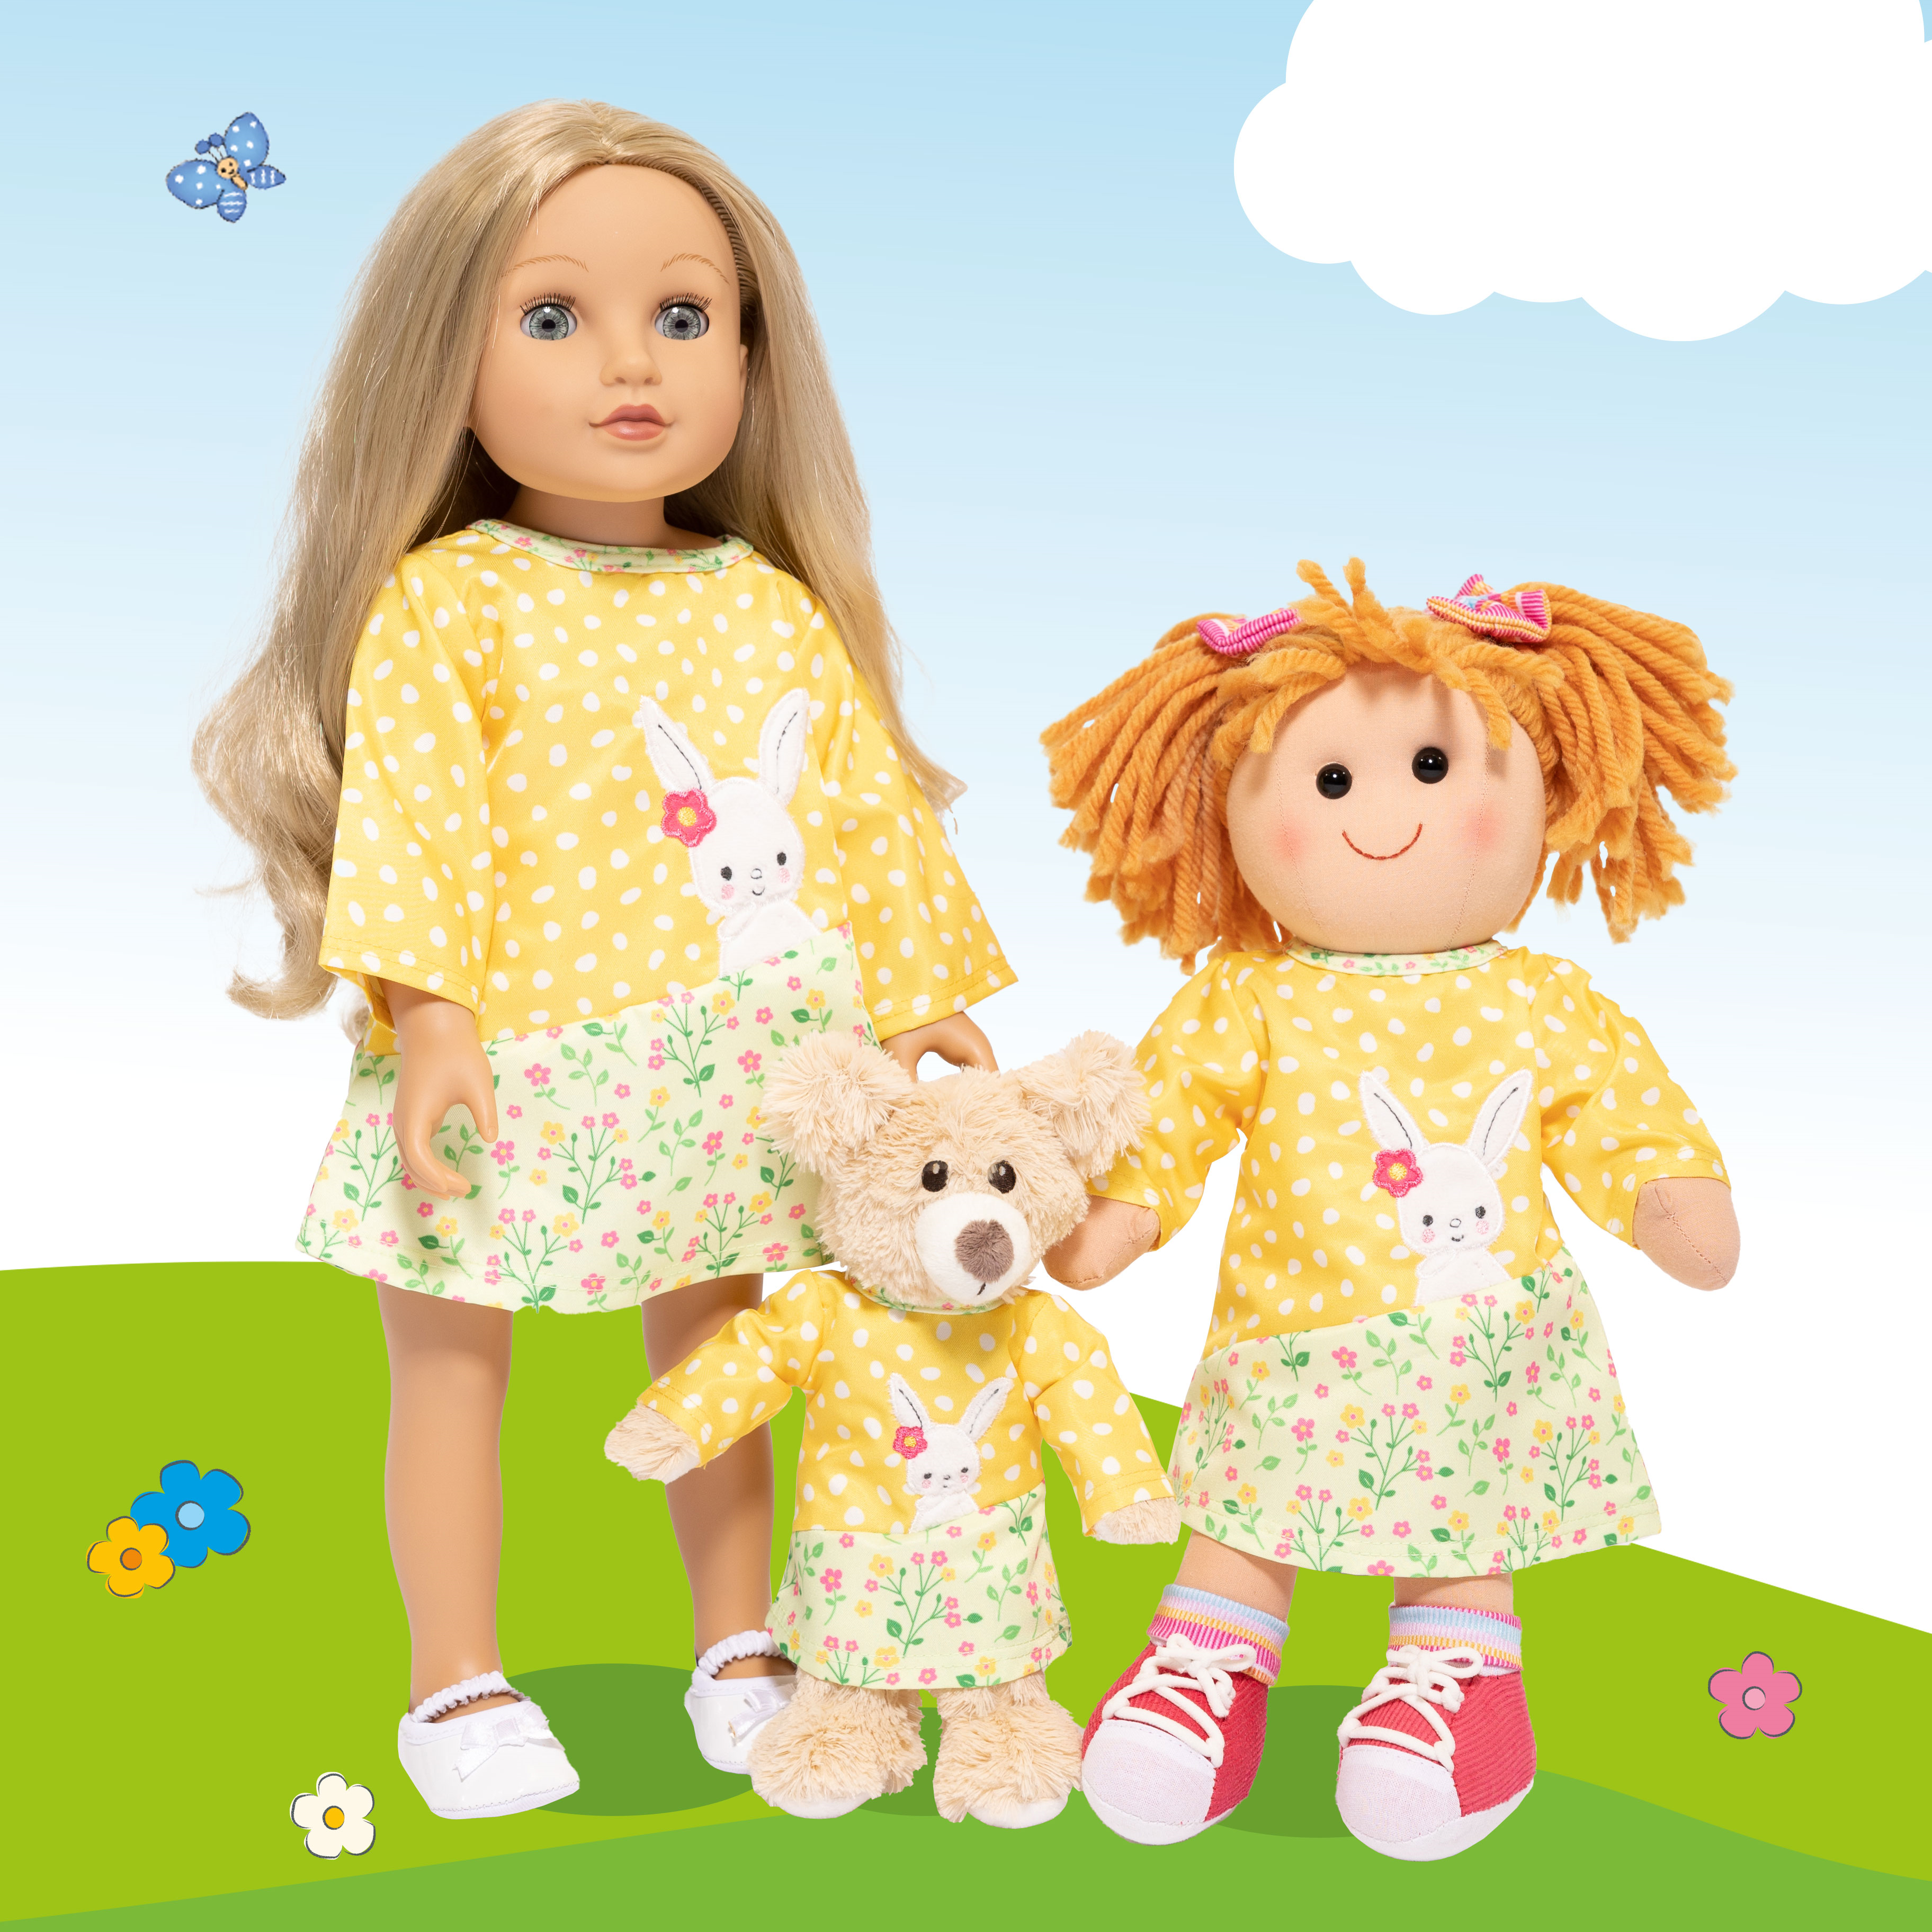 Heless präsentiert neue Puppen-Bekleidungsserie "Bunny Lou"